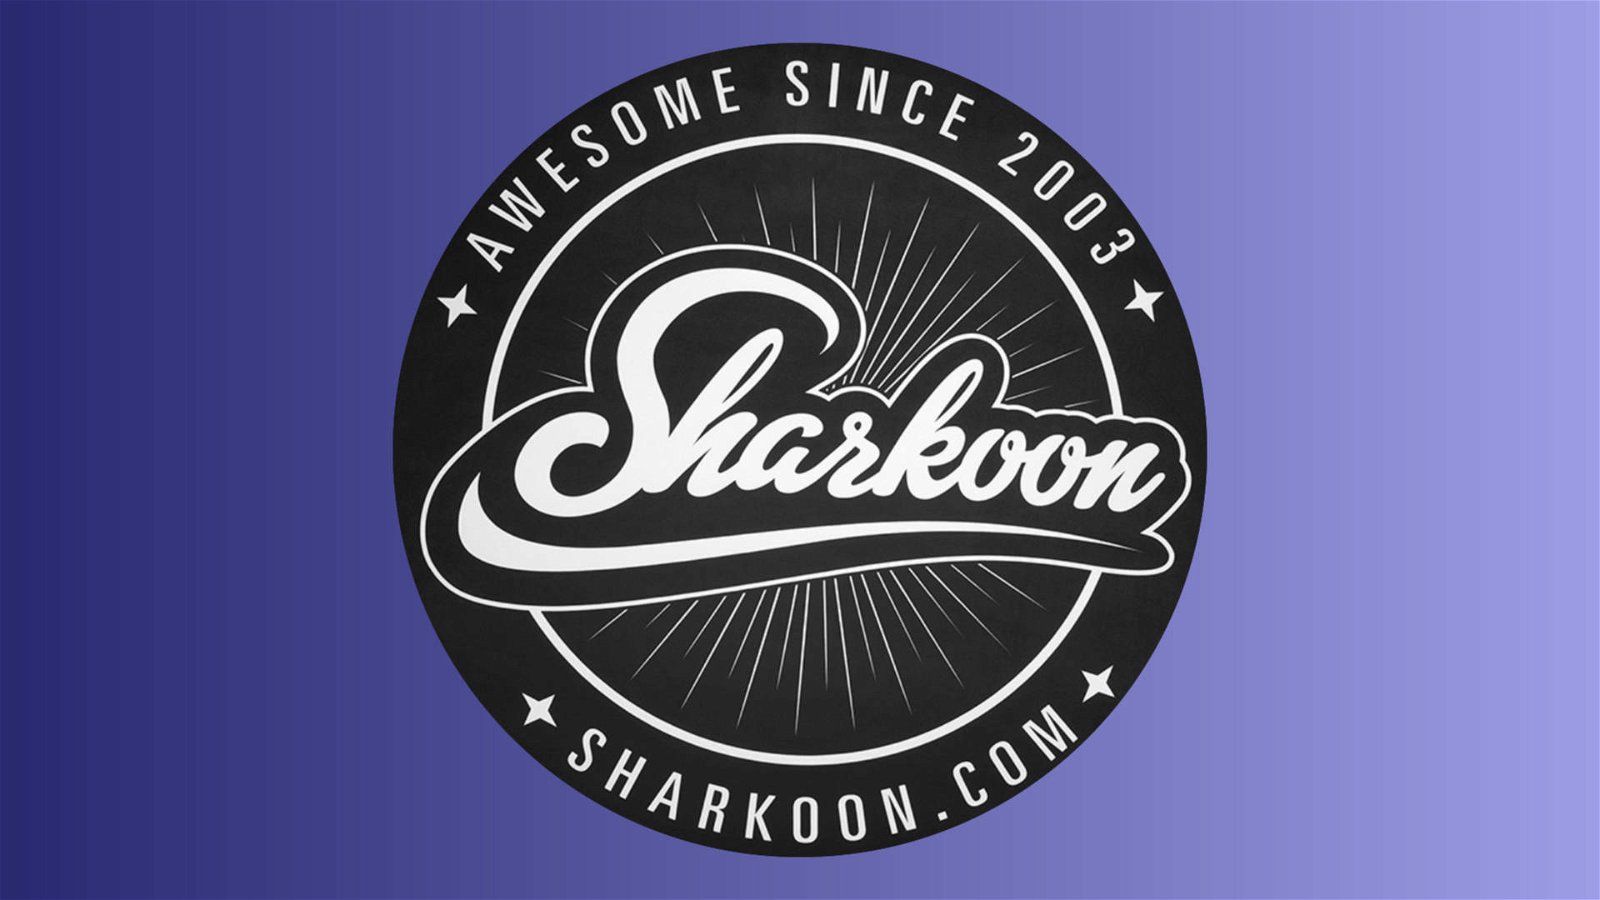 Immagine di Sharkoon annuncia il TG5 Pro RGB